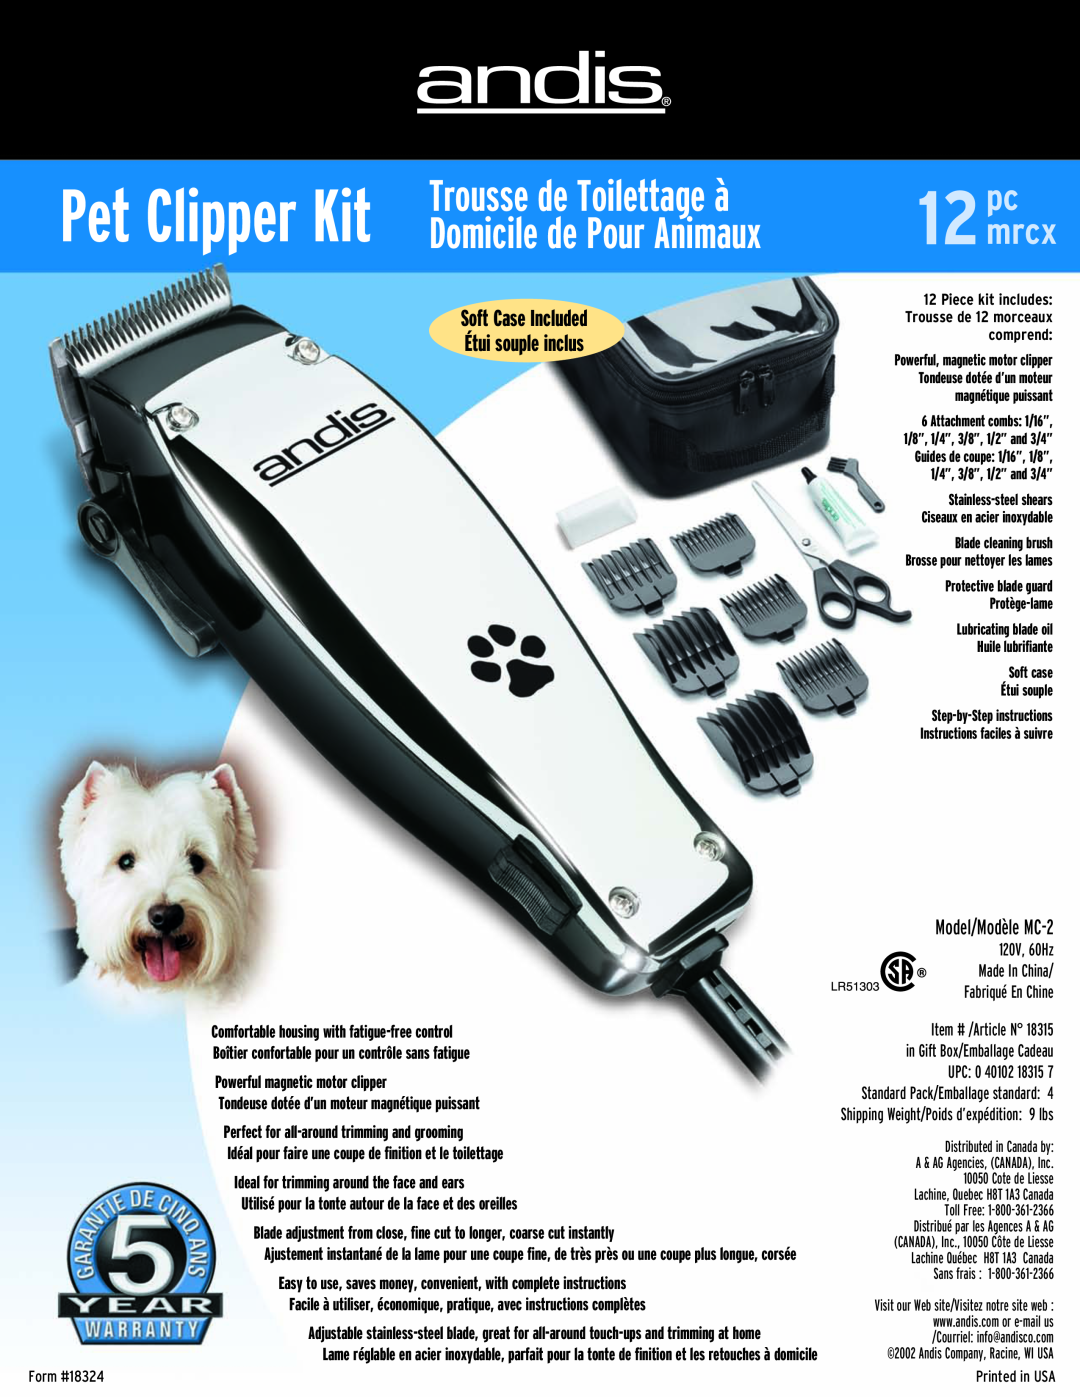 Andis Company MC-2 manual Pet Clipper Kit, Trousse de Toilettage à, Domicile de Pour Animaux, 12mrcx 